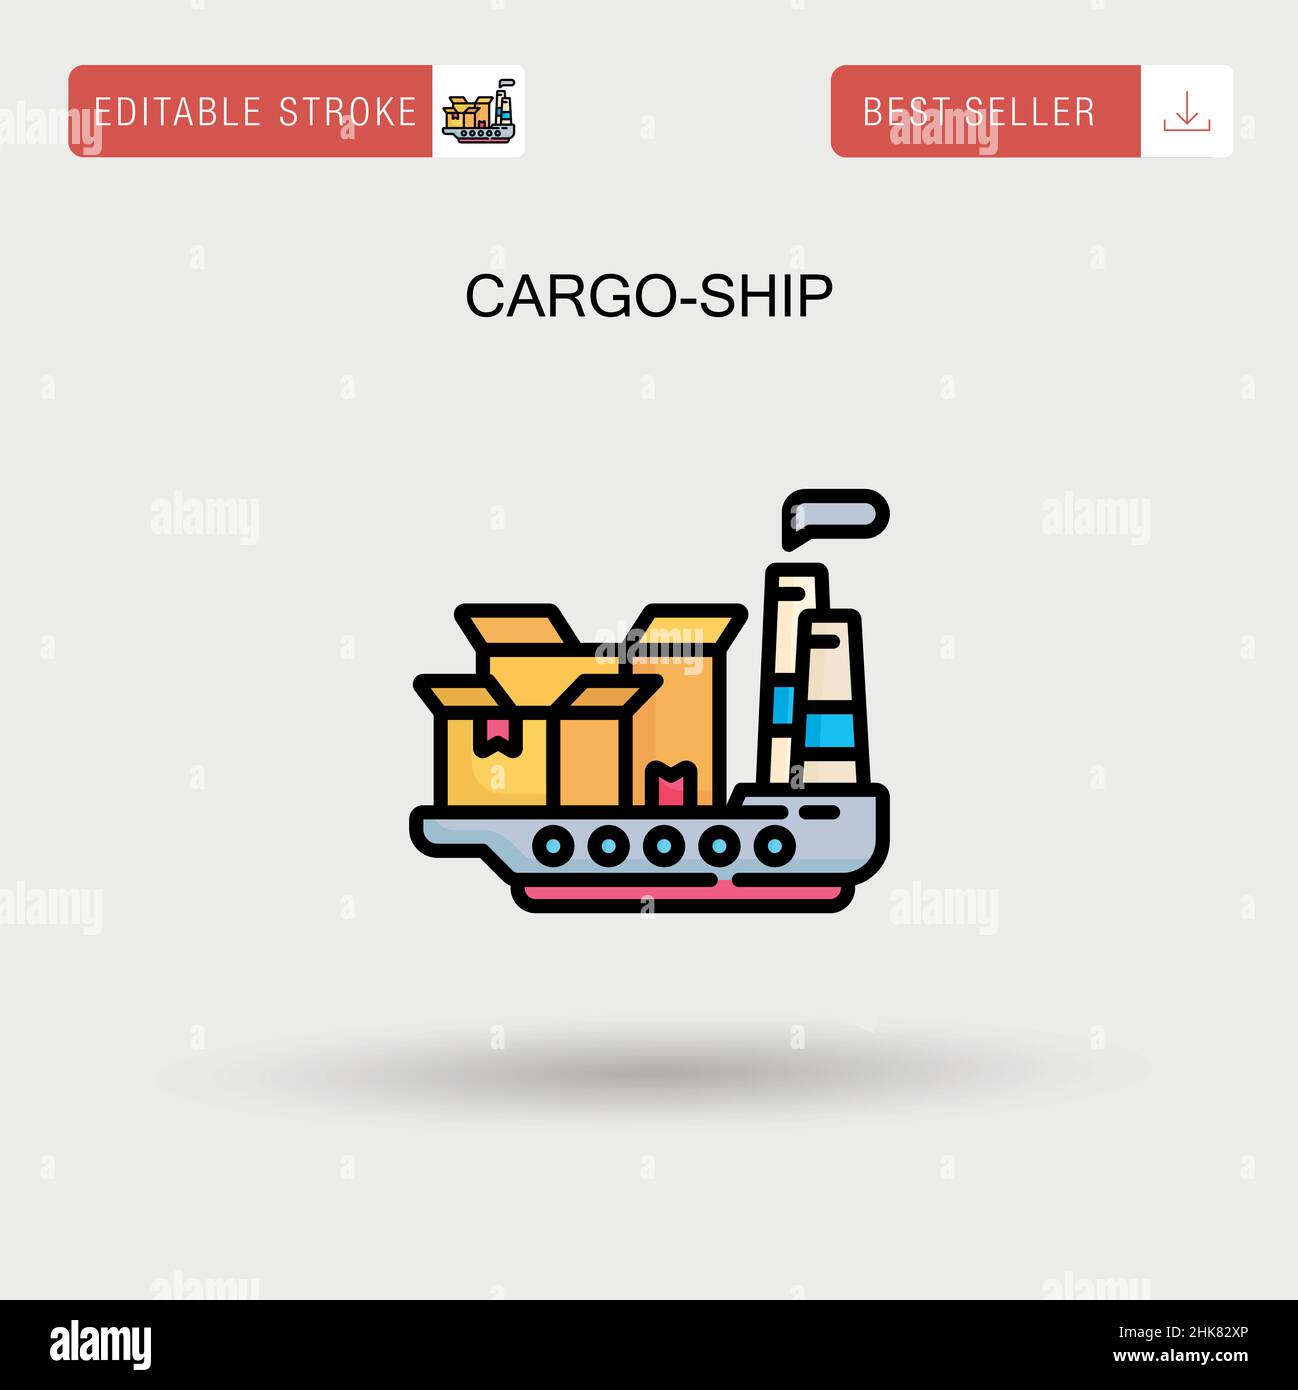 Cargo-ship Simple vector icon. Stock Vector